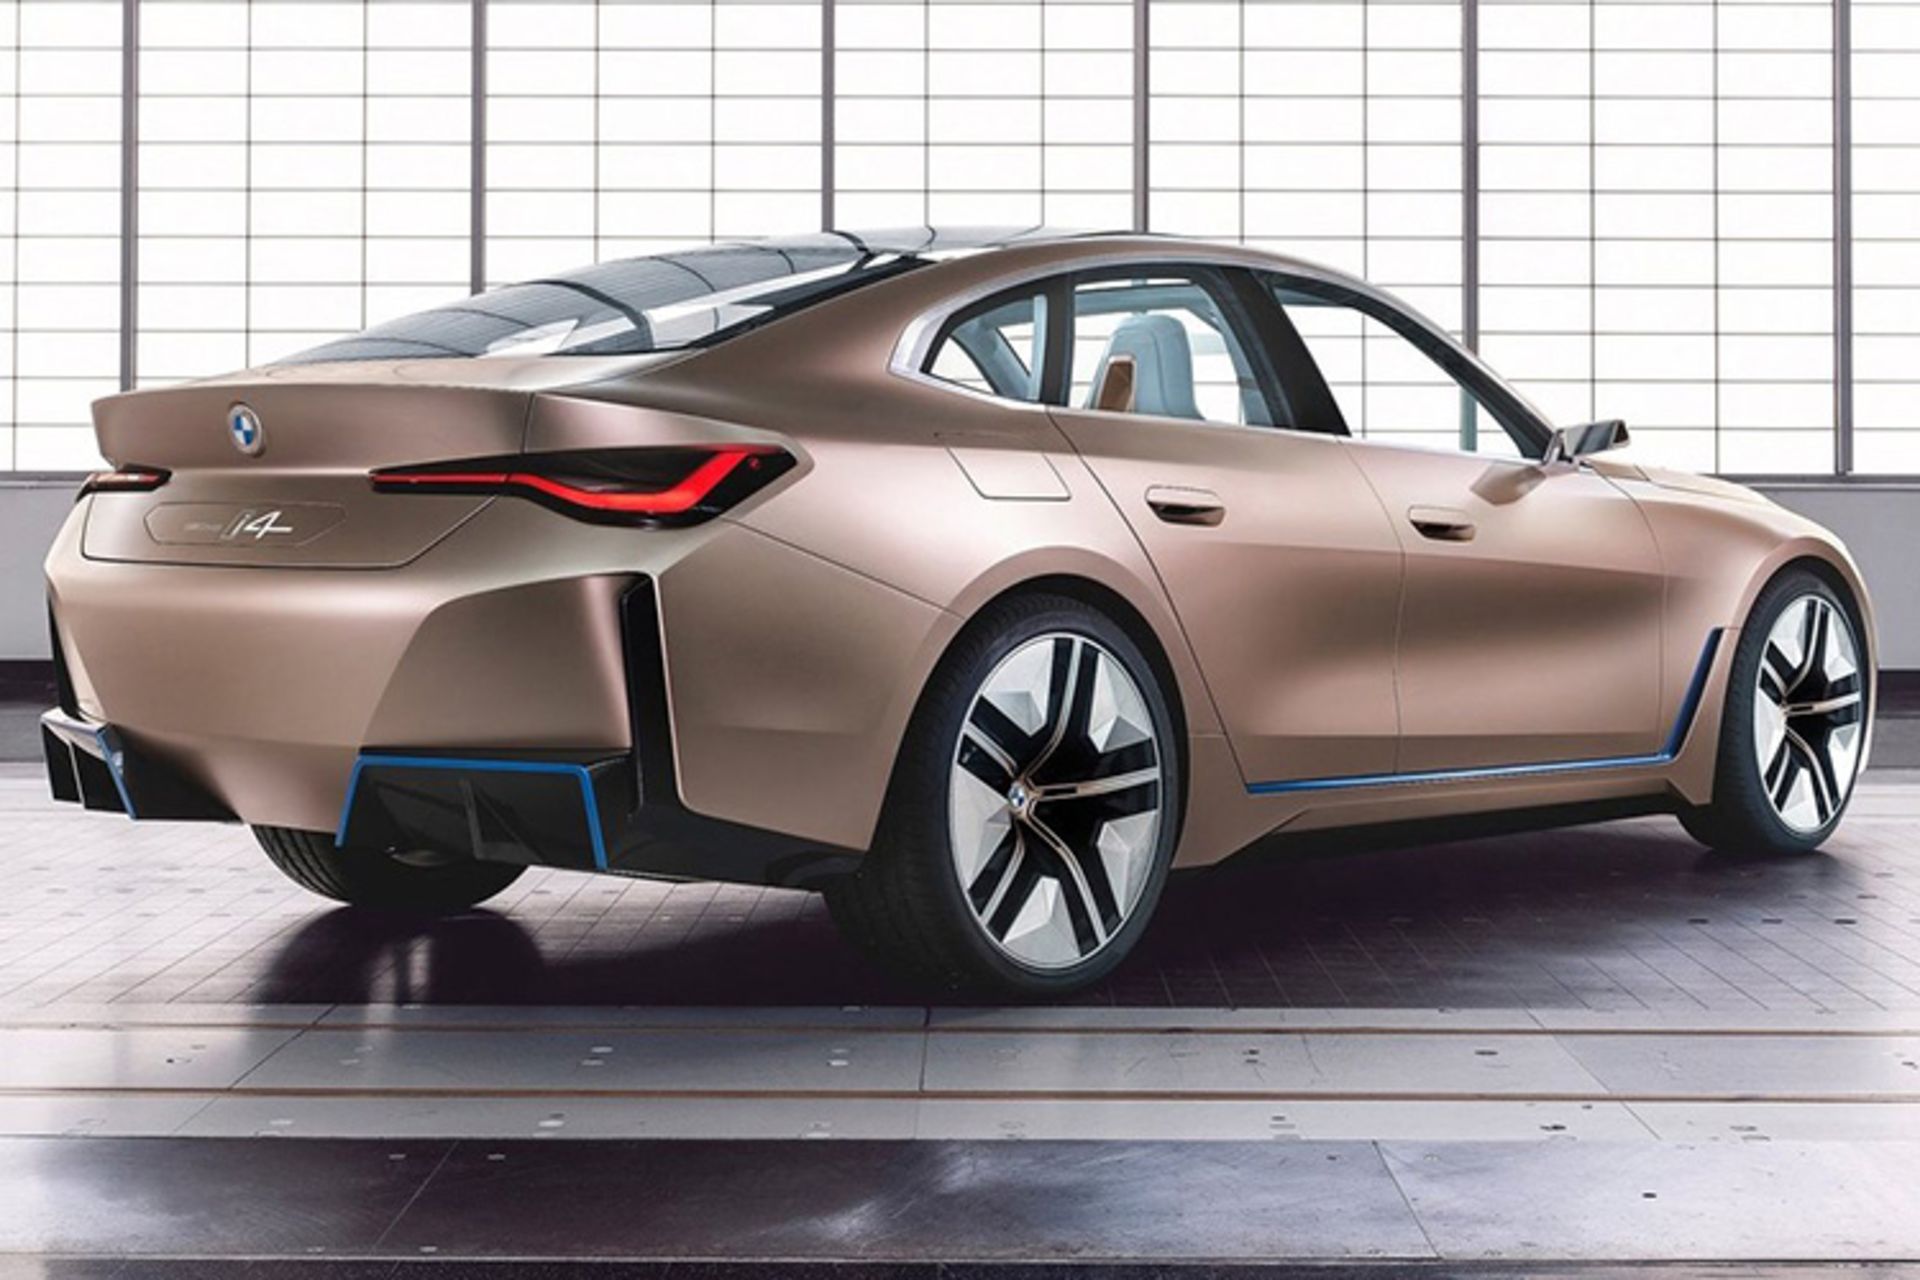 مرجع متخصصين ايران BMW i4 Concept